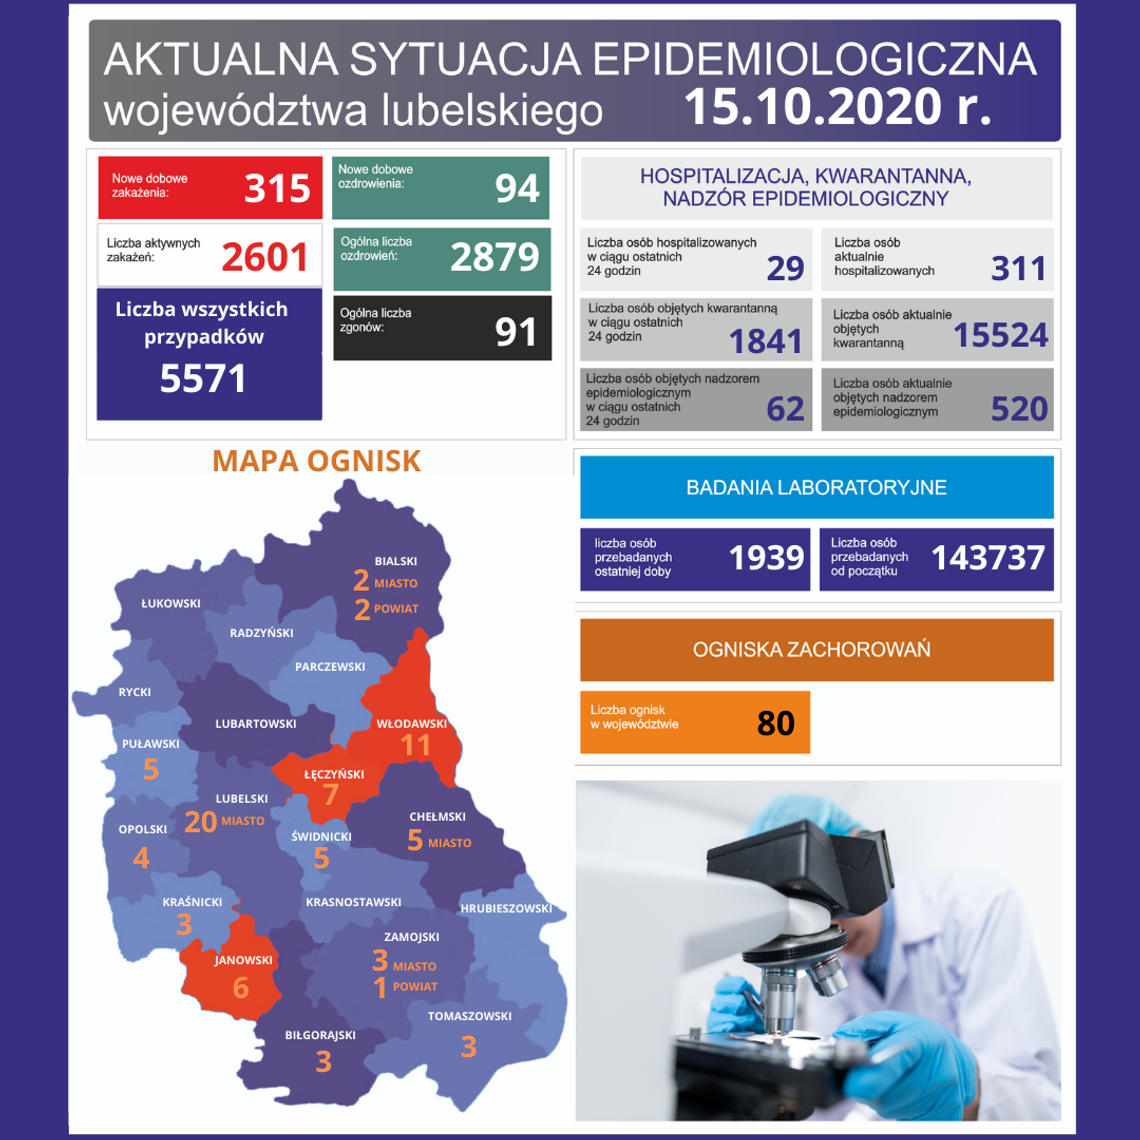 80 aktywnych ognisk koronawirusa w województwie lubelskim. Dwa nowe pojawiły się powiecie włodawskim